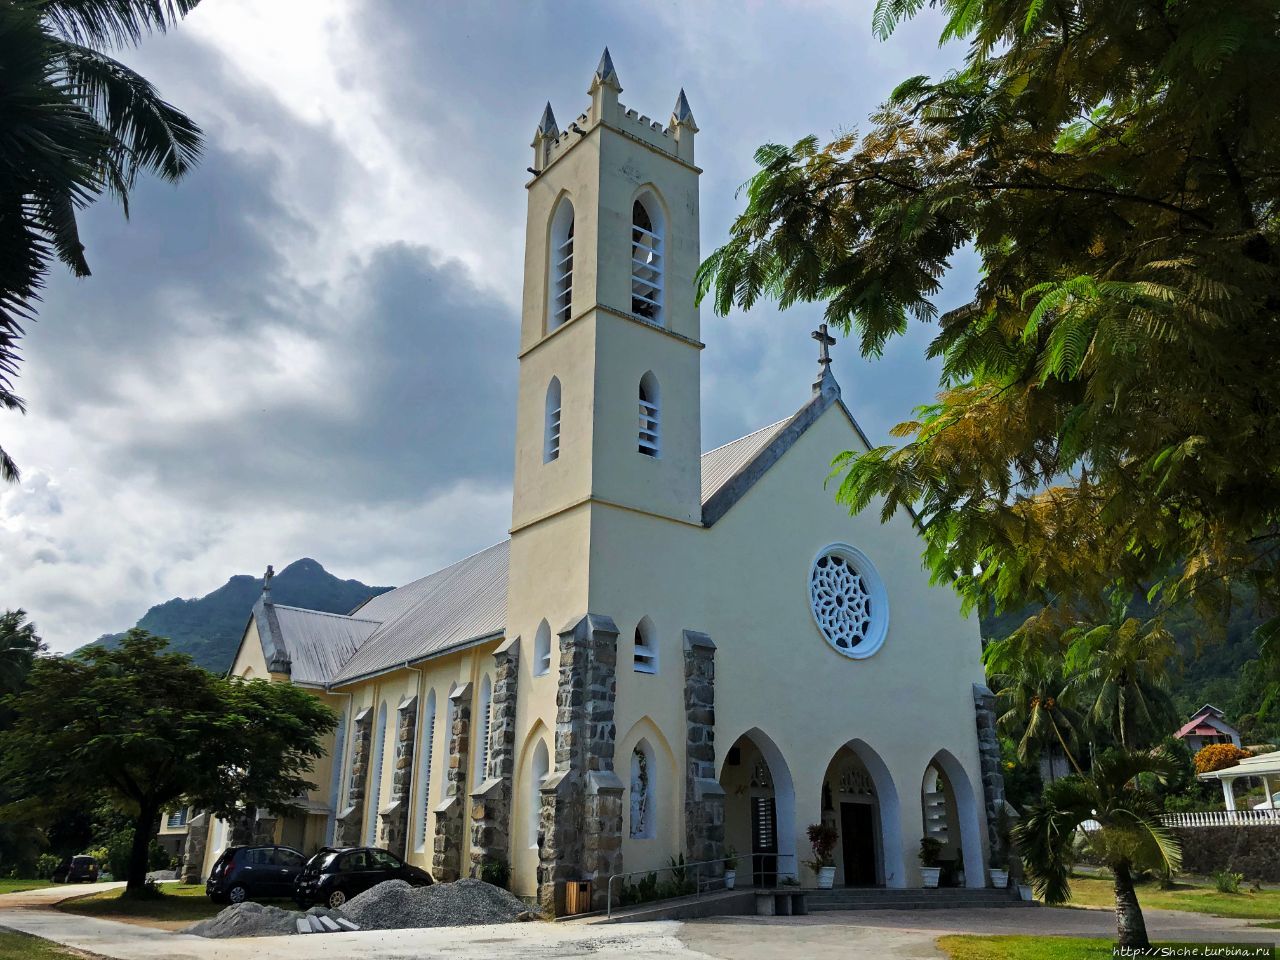 St. Roch Church, радушно открытая церковь на Сейшелах